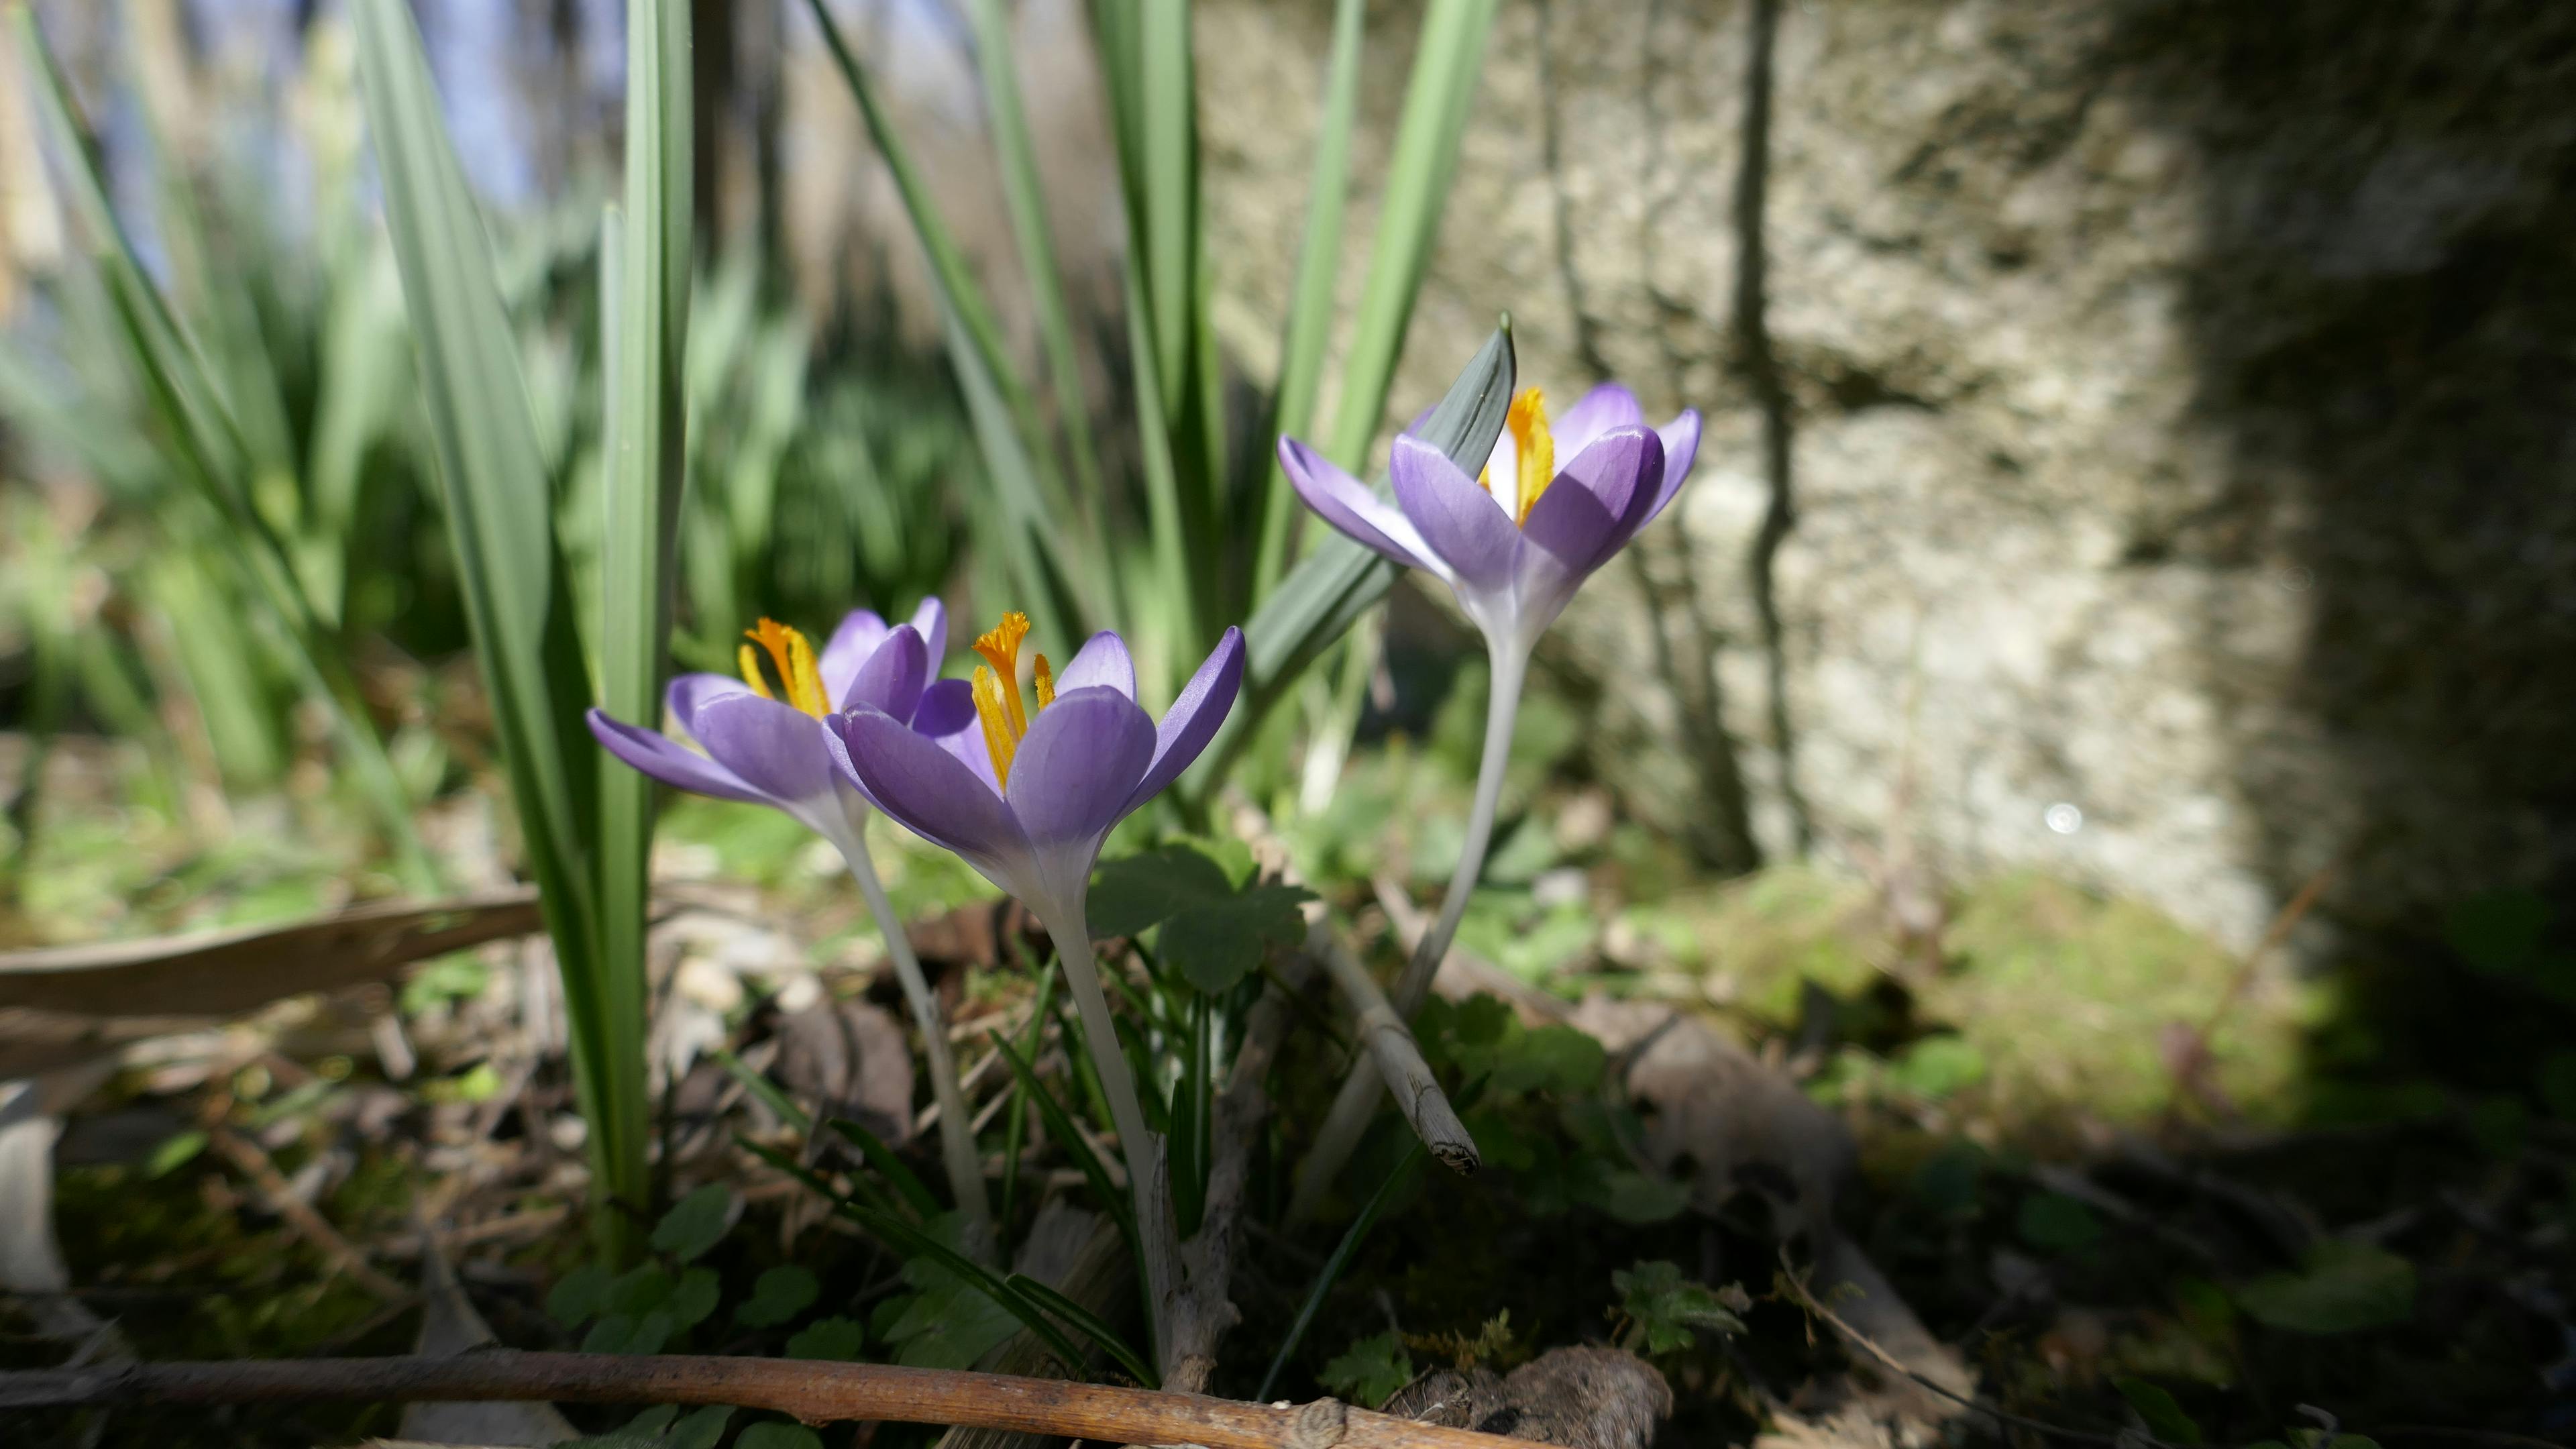 Free stock photo of crocus purple flower, garden flower, spring spirit